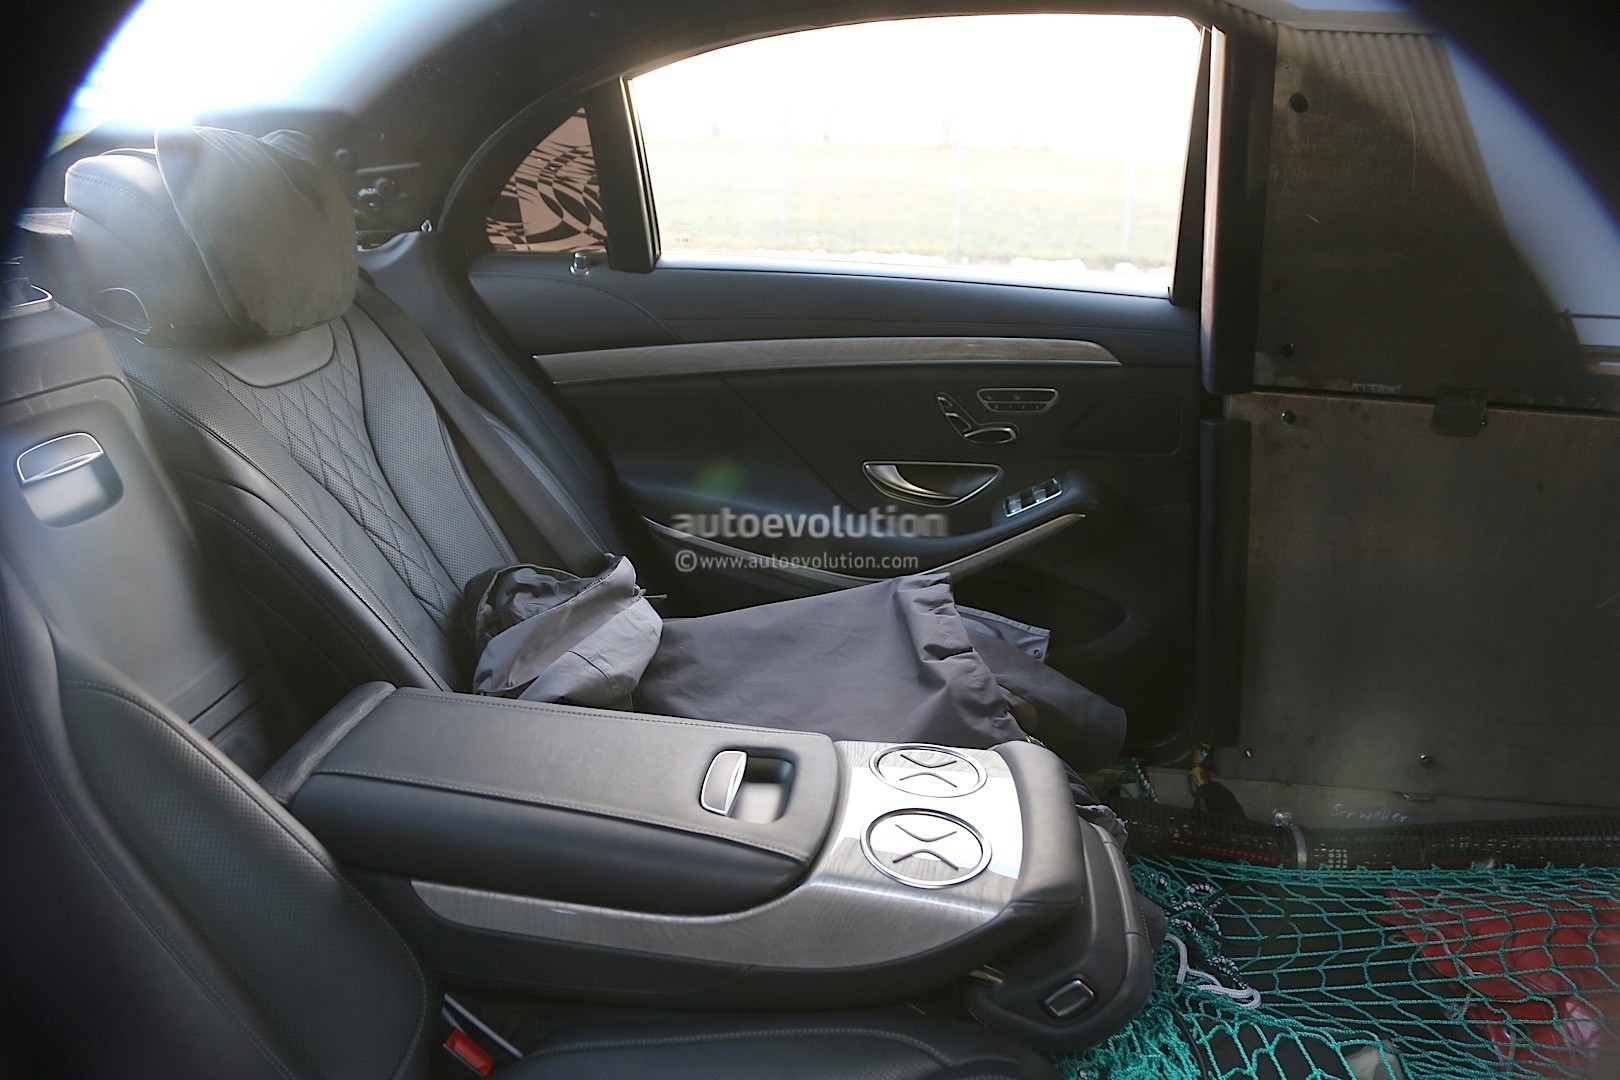 2016 Mercedes Benz S600 Pullman Interior Spyshots Show